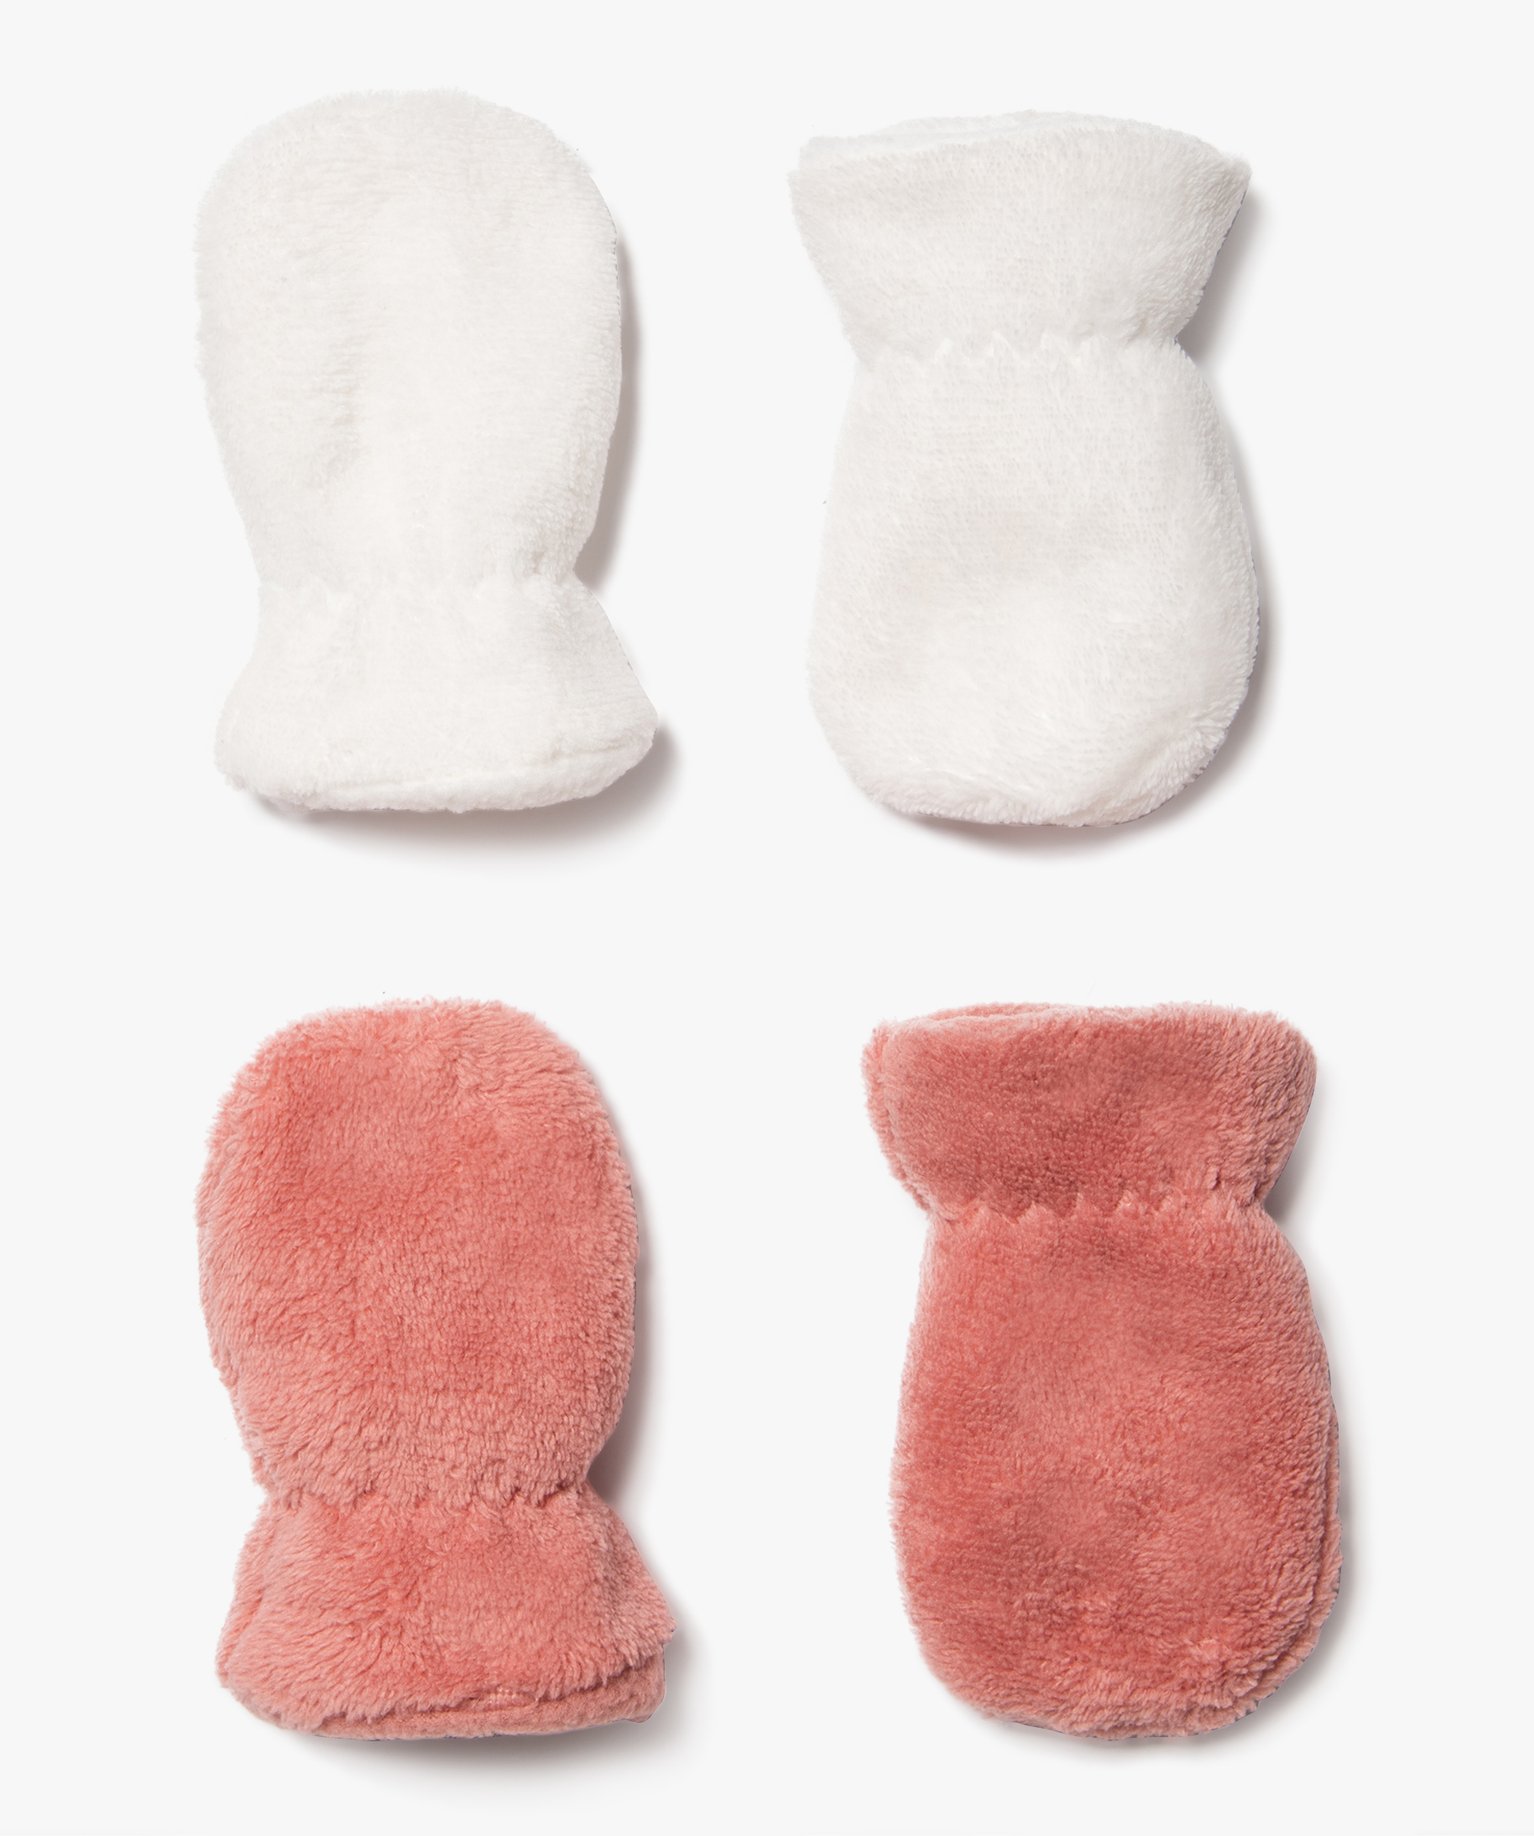 Moufles en maille peluche bébé fille (lot de 2 paires) - TU - rose standard - GEMO